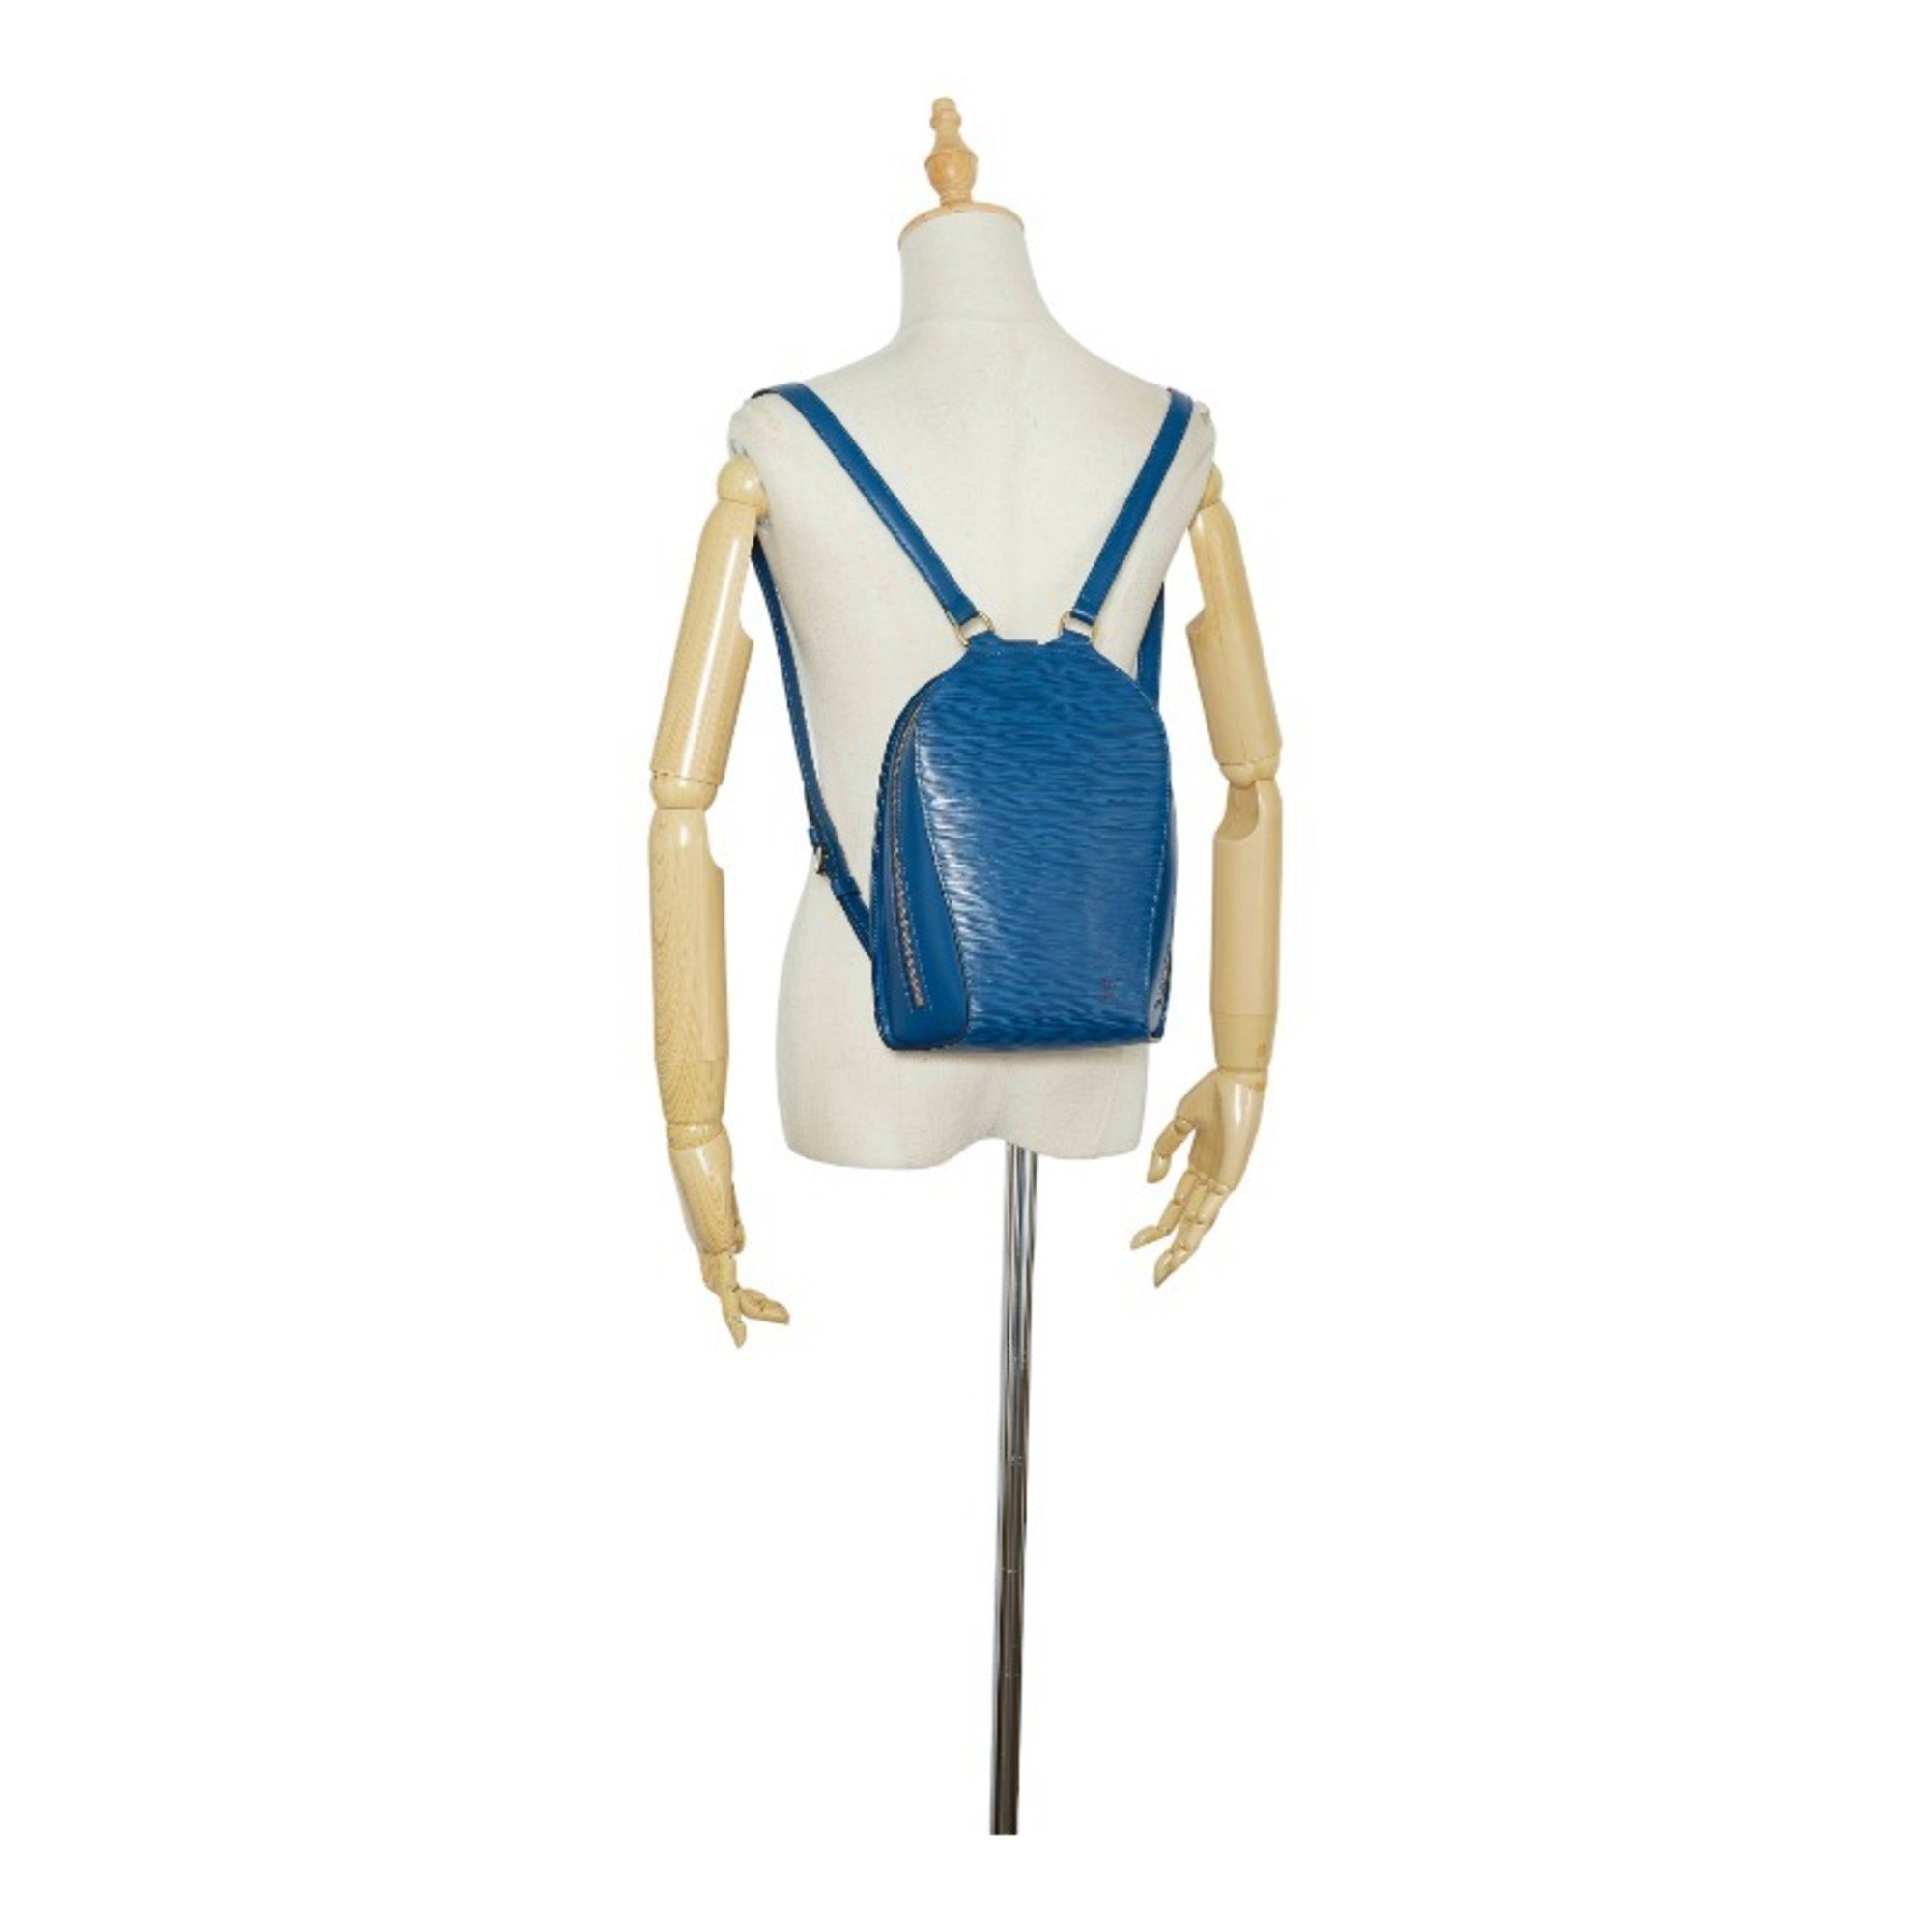 Louis Vuitton Epi Mabillon Backpack M52235 Toledo Blue Leather Ladies LOUIS VUITTON